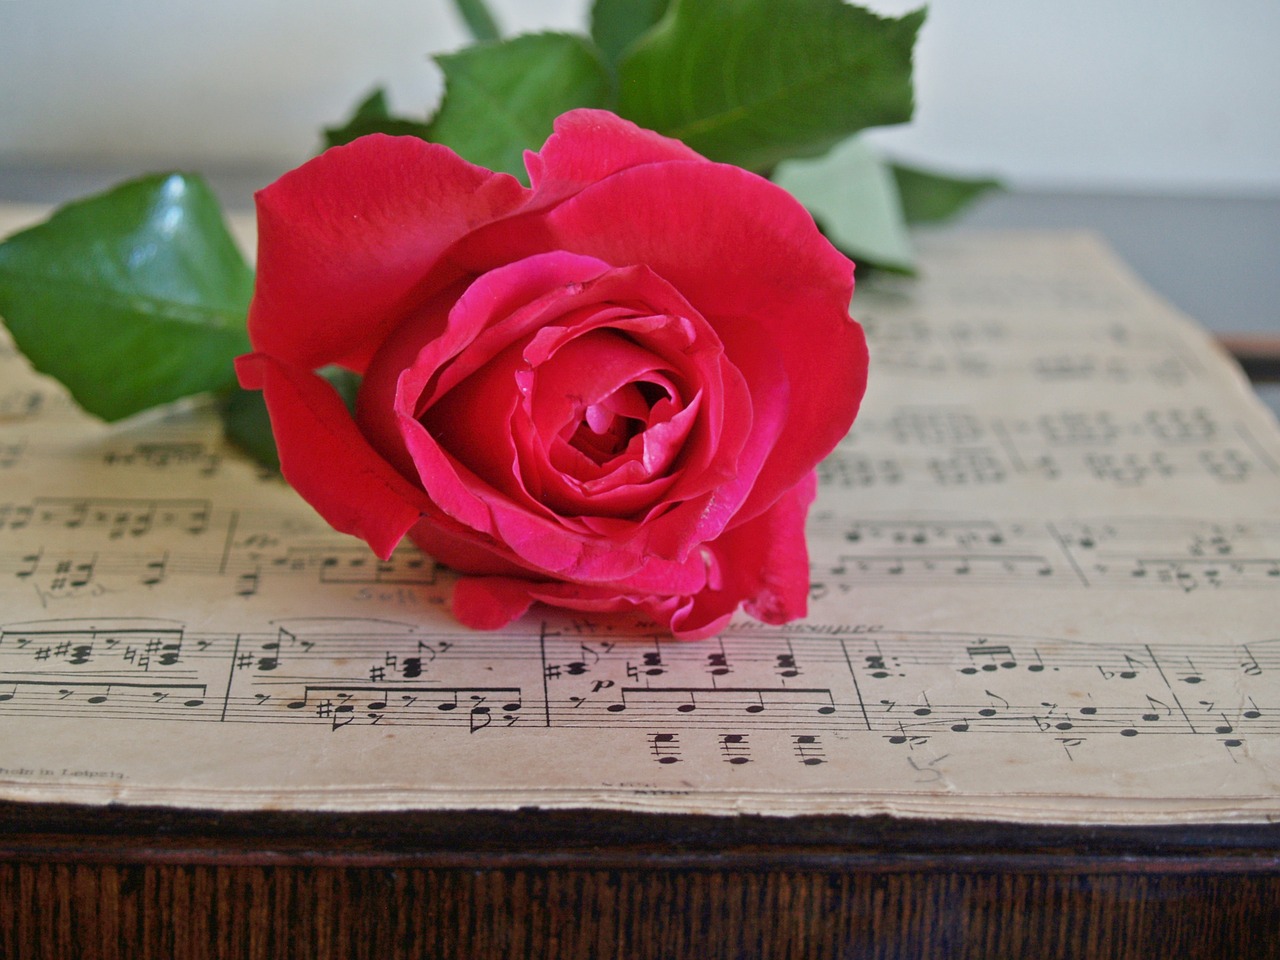 rose red sheet music free photo